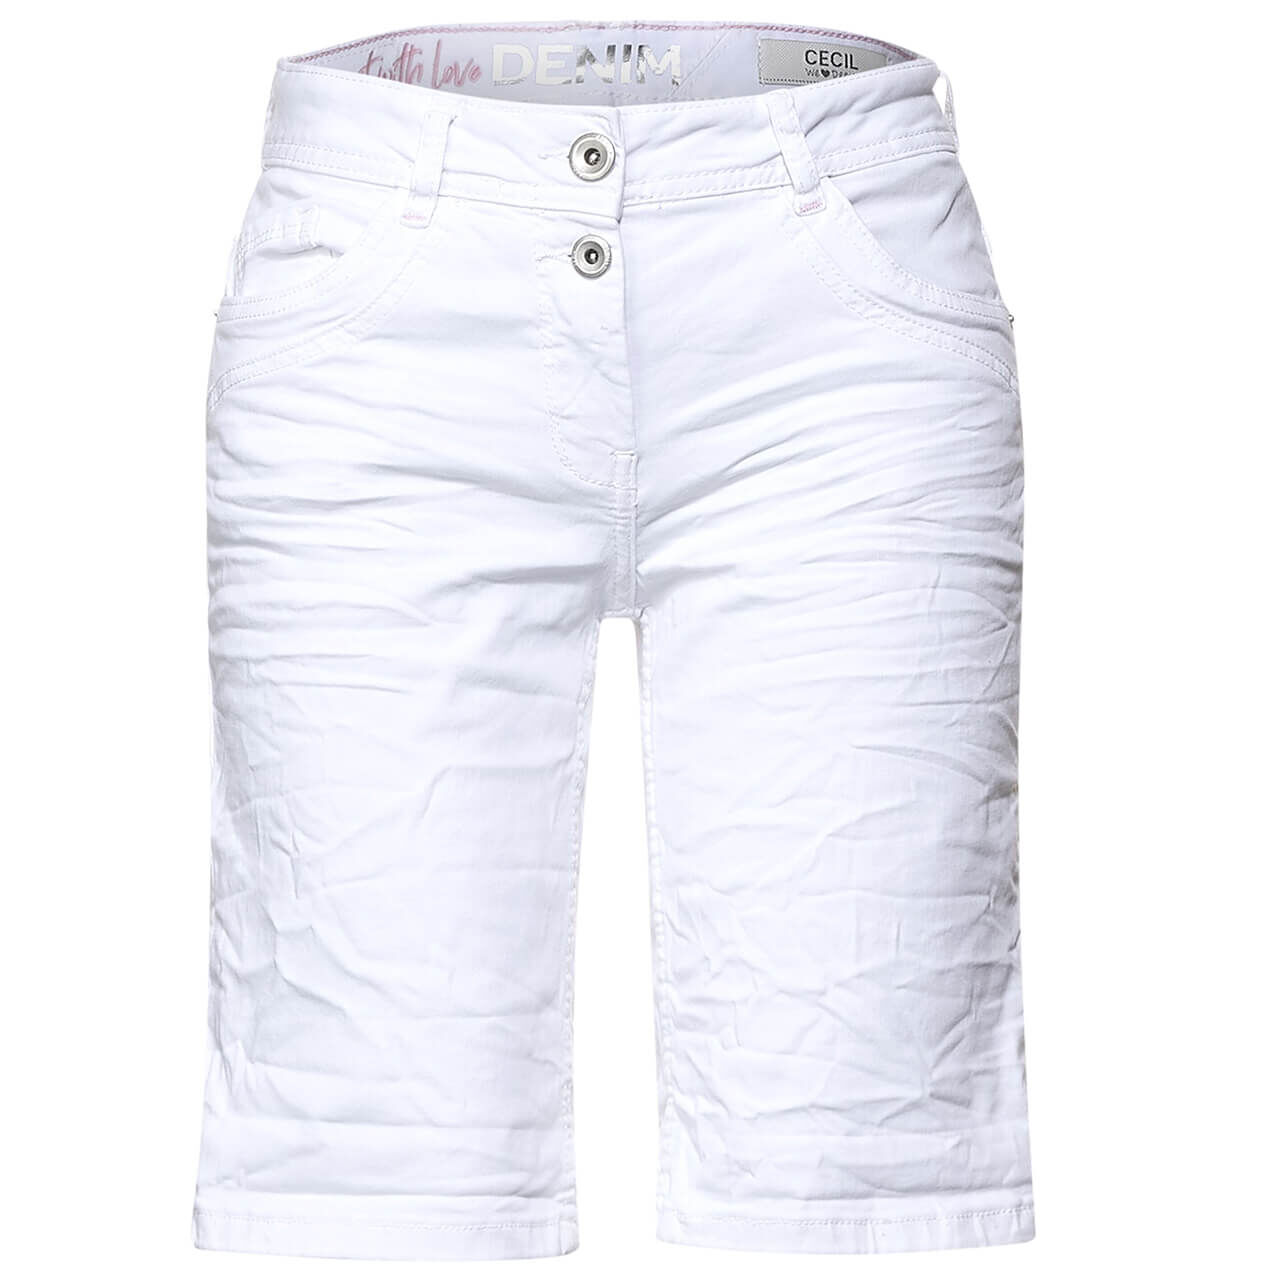 Cecil Jeans Scarlett Shorts für Damen in Weiß, FarbNr.: 10438